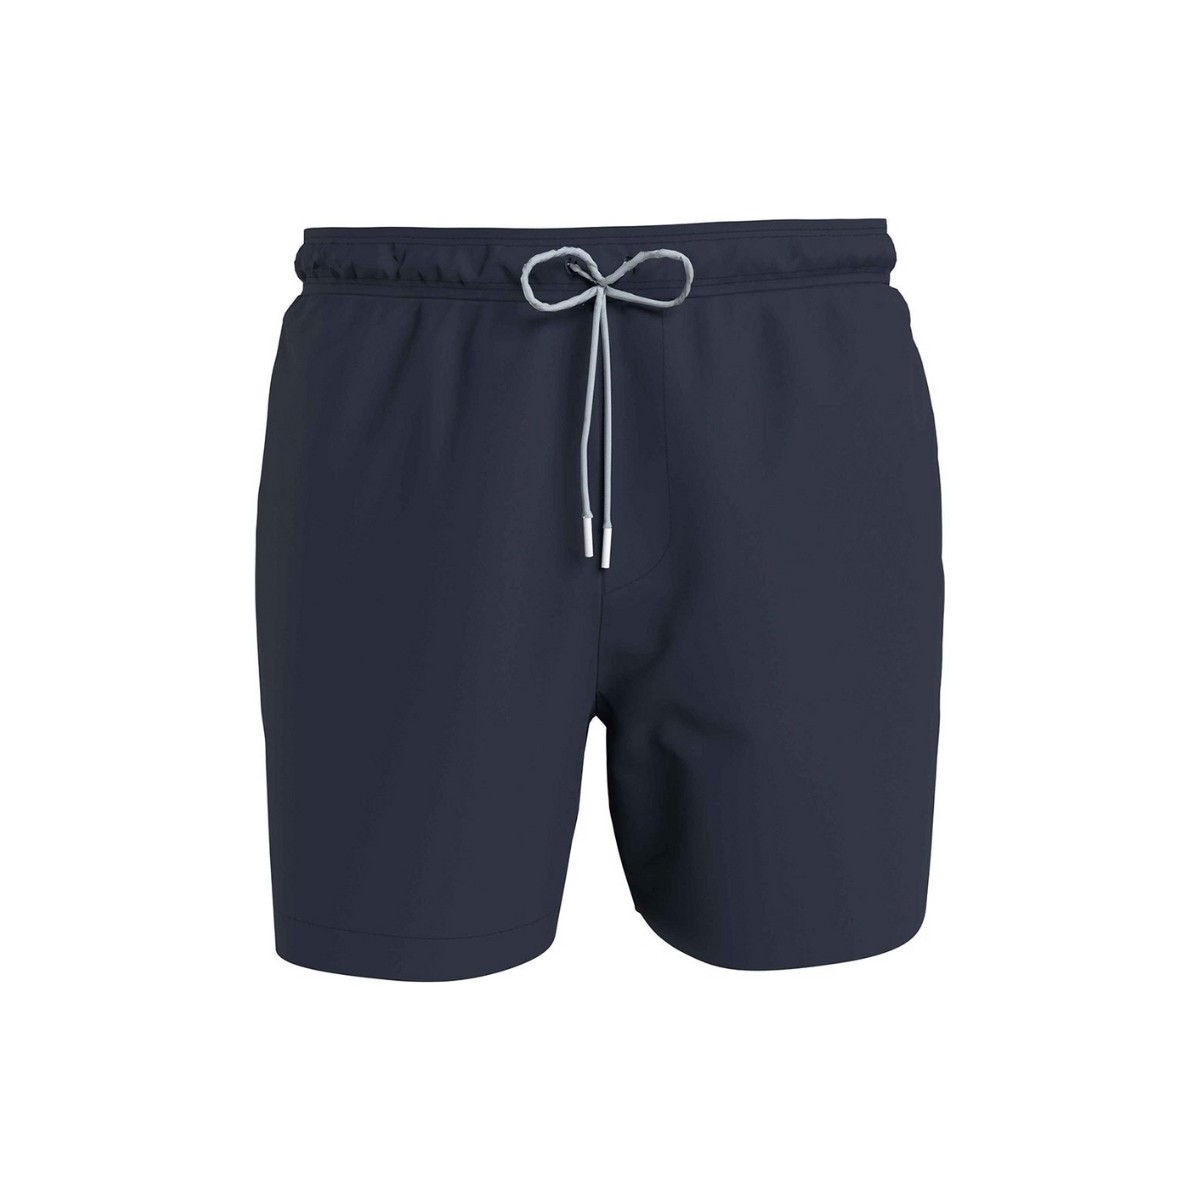 Vêtements Homme Maillots / Shorts de bain Calvin Klein Jeans Short de bain  Ref 59103 DCA Marine Bleu